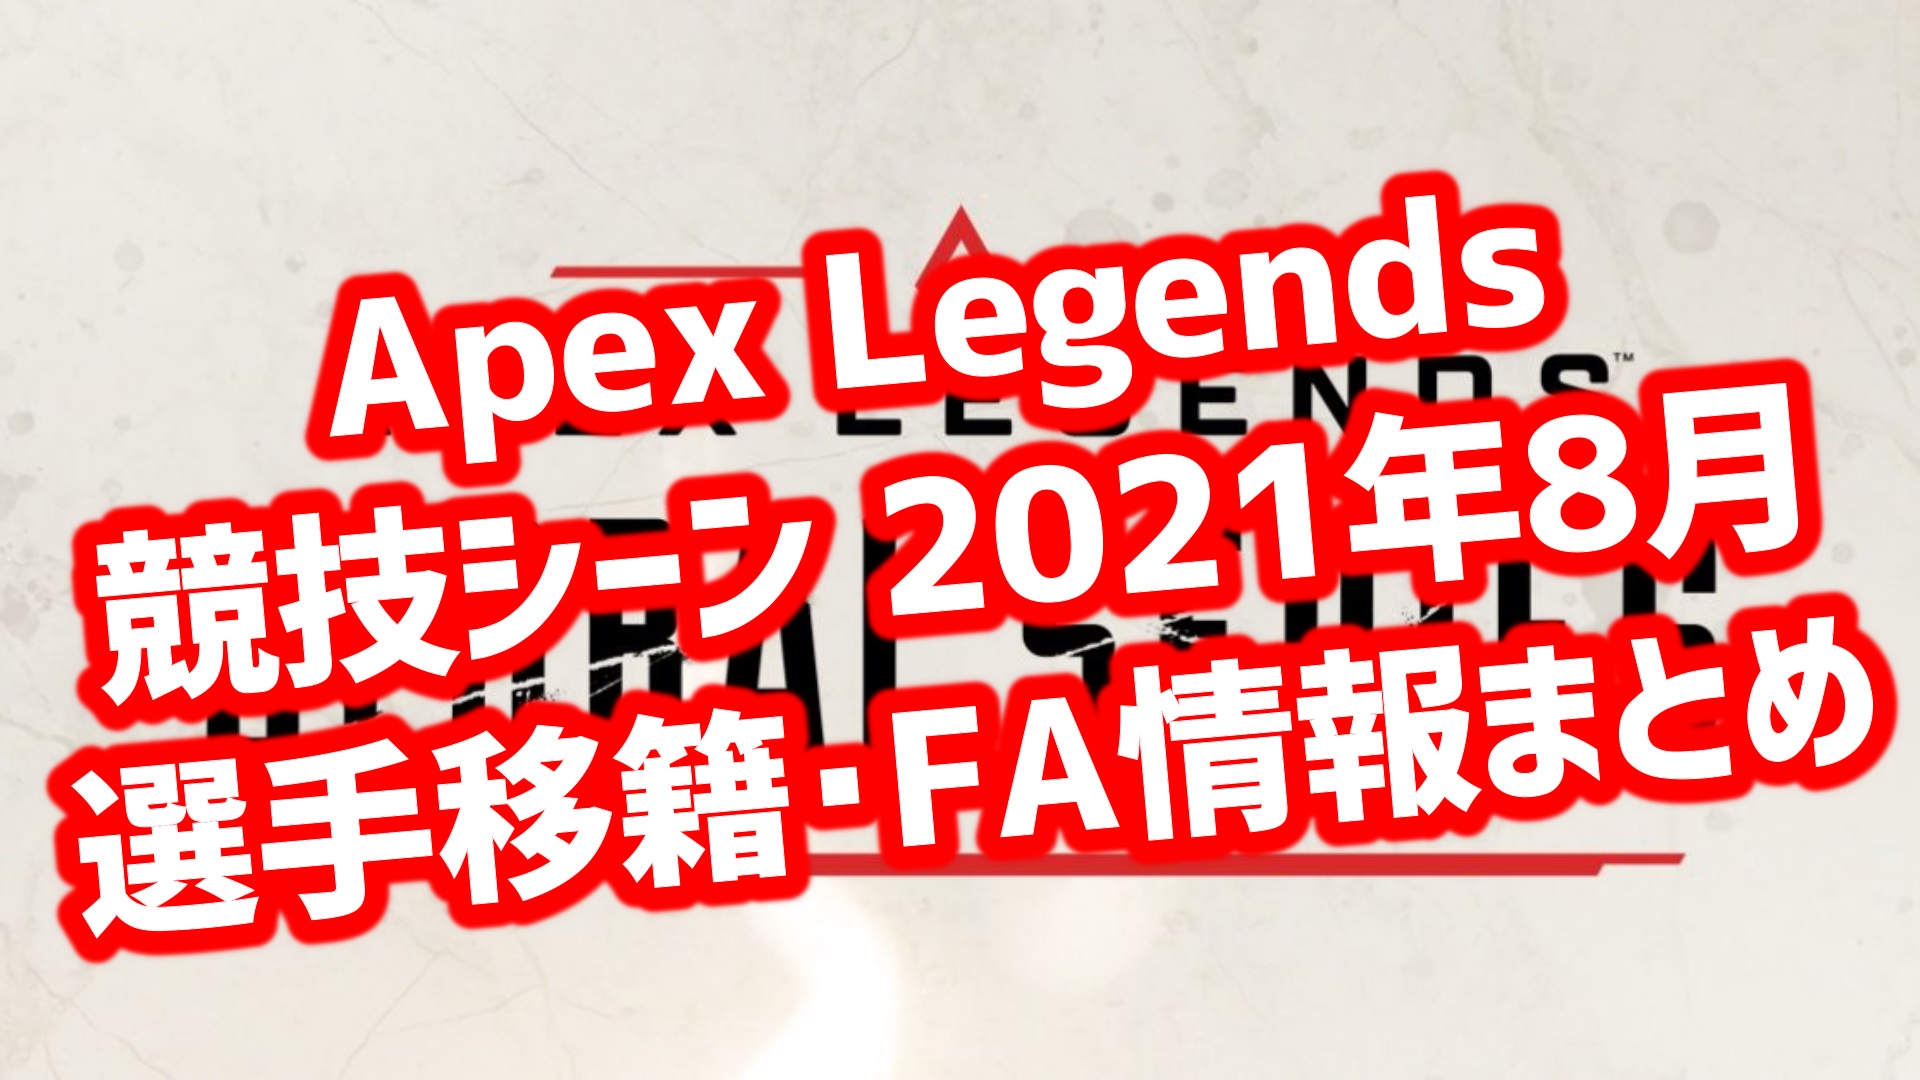 Apex Legends 移籍情報8月